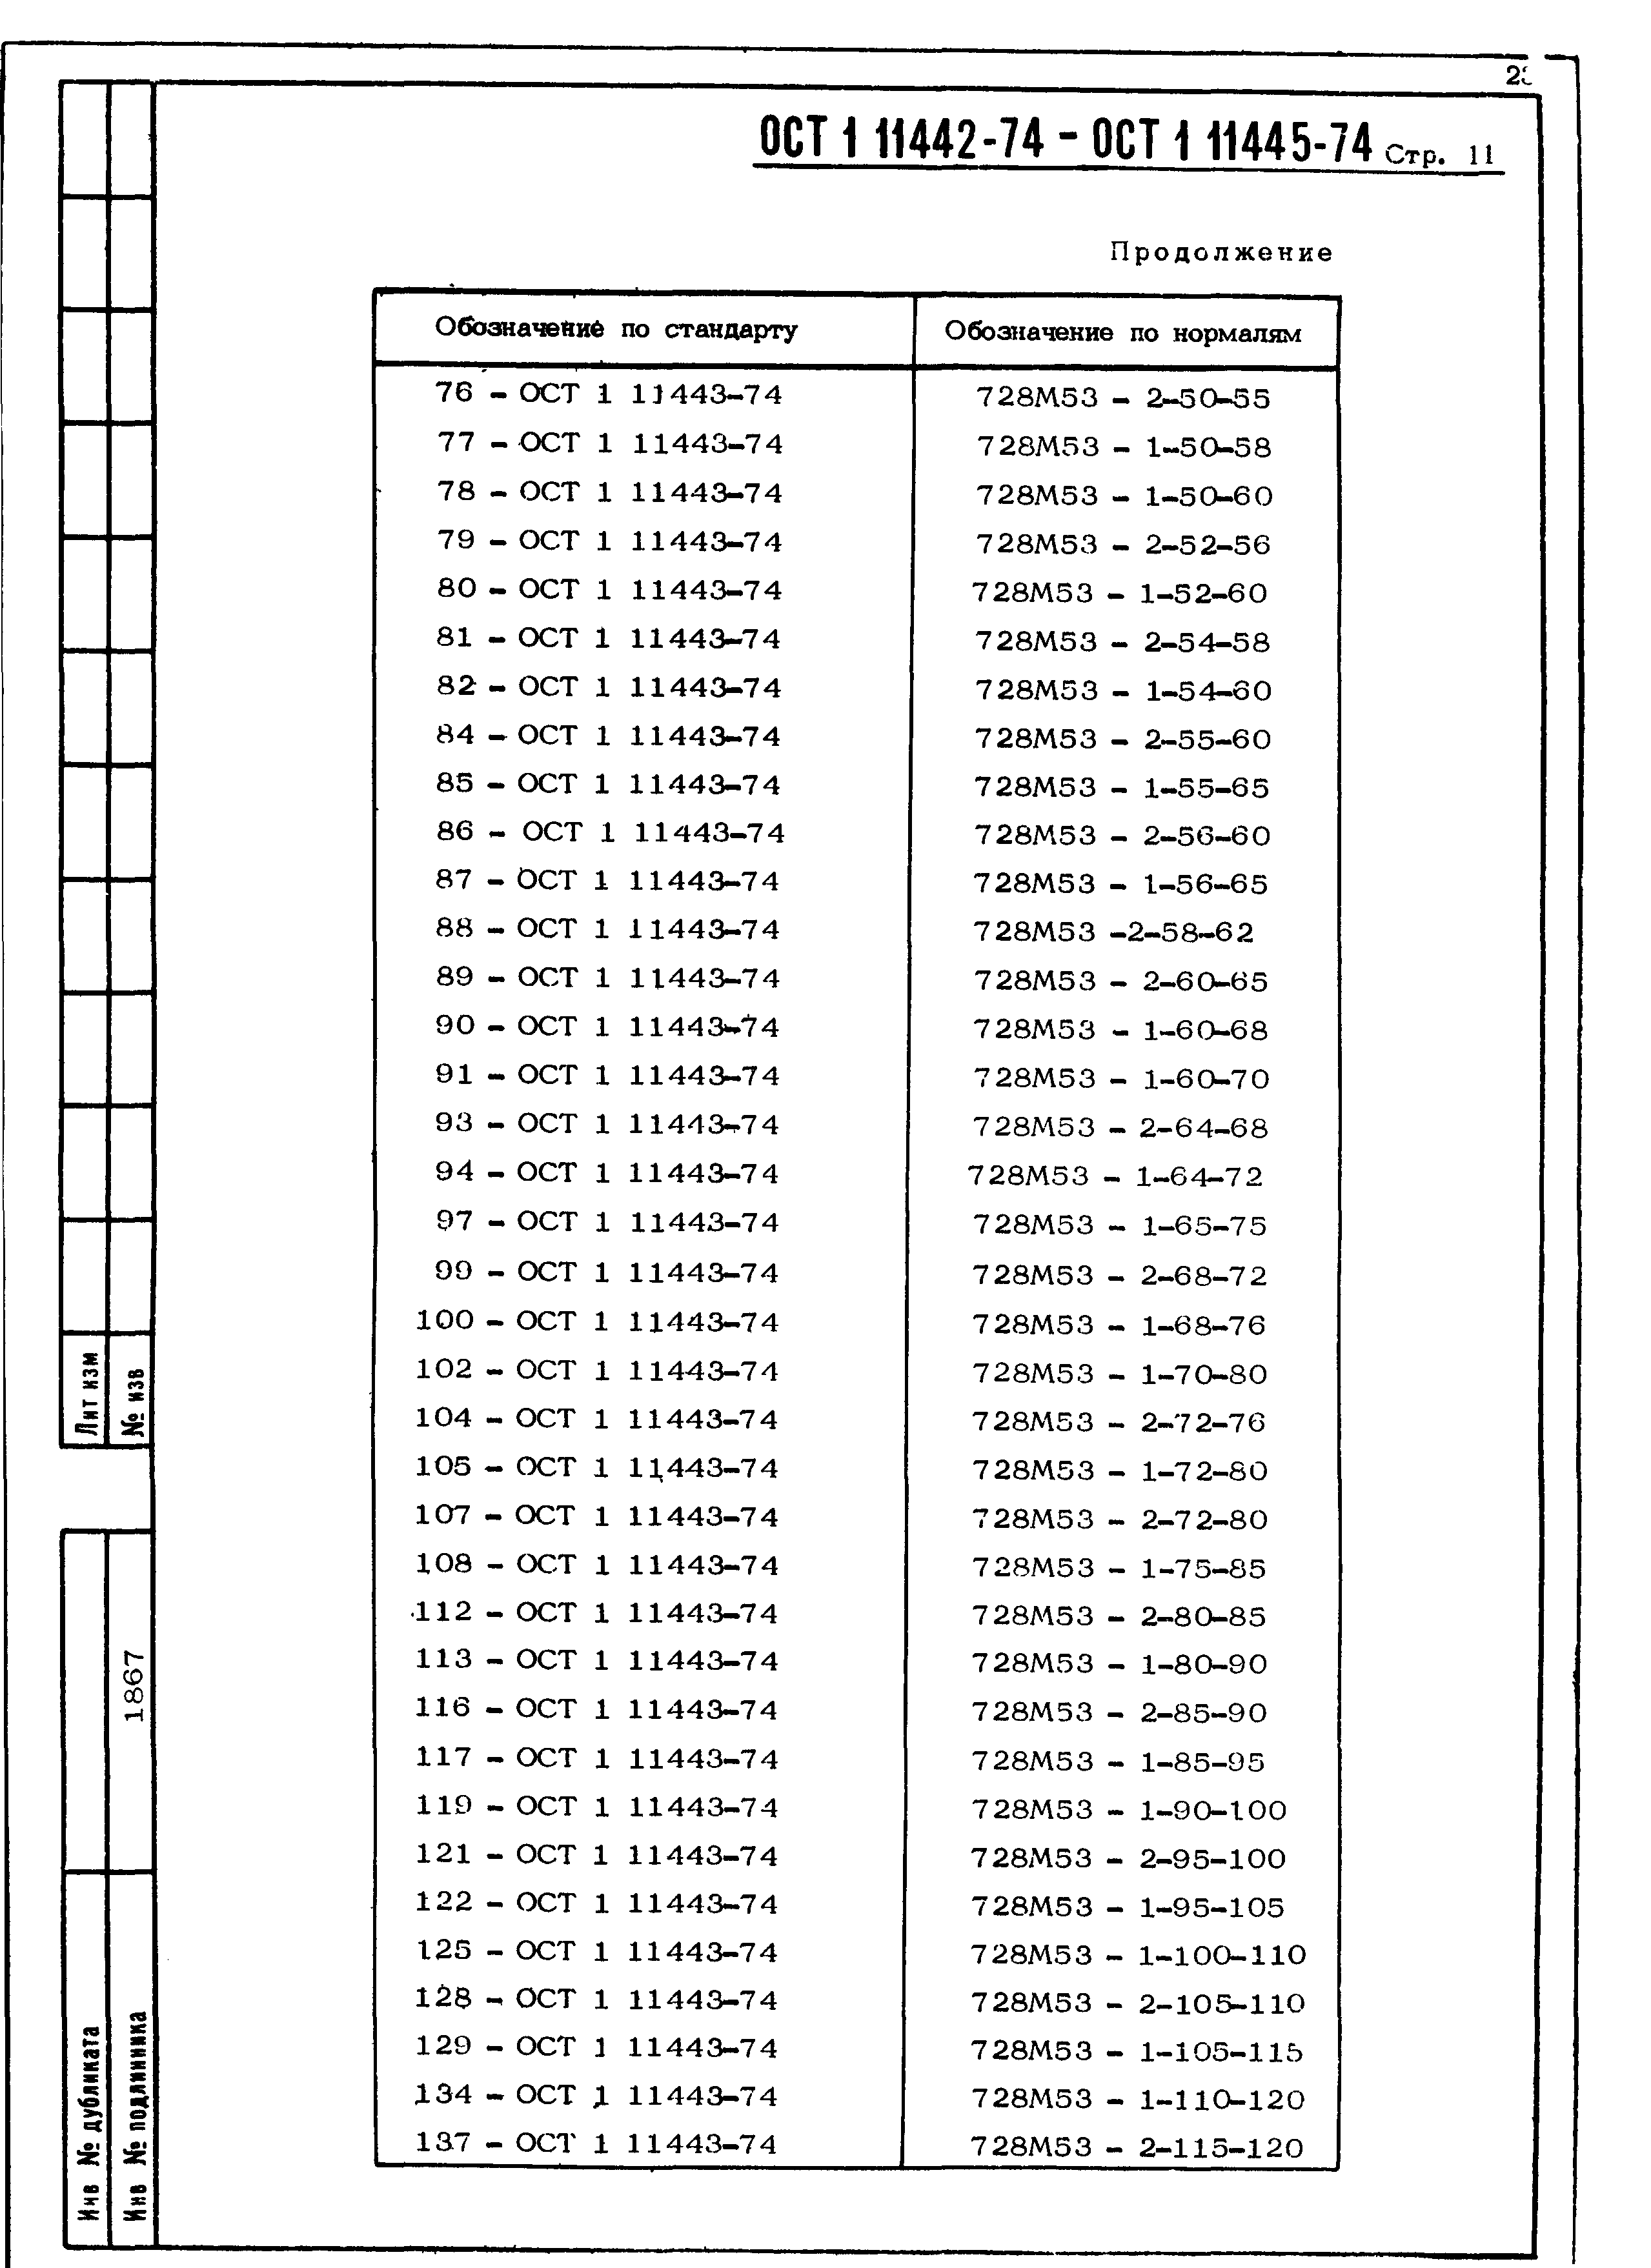 ОСТ 1 11442-74